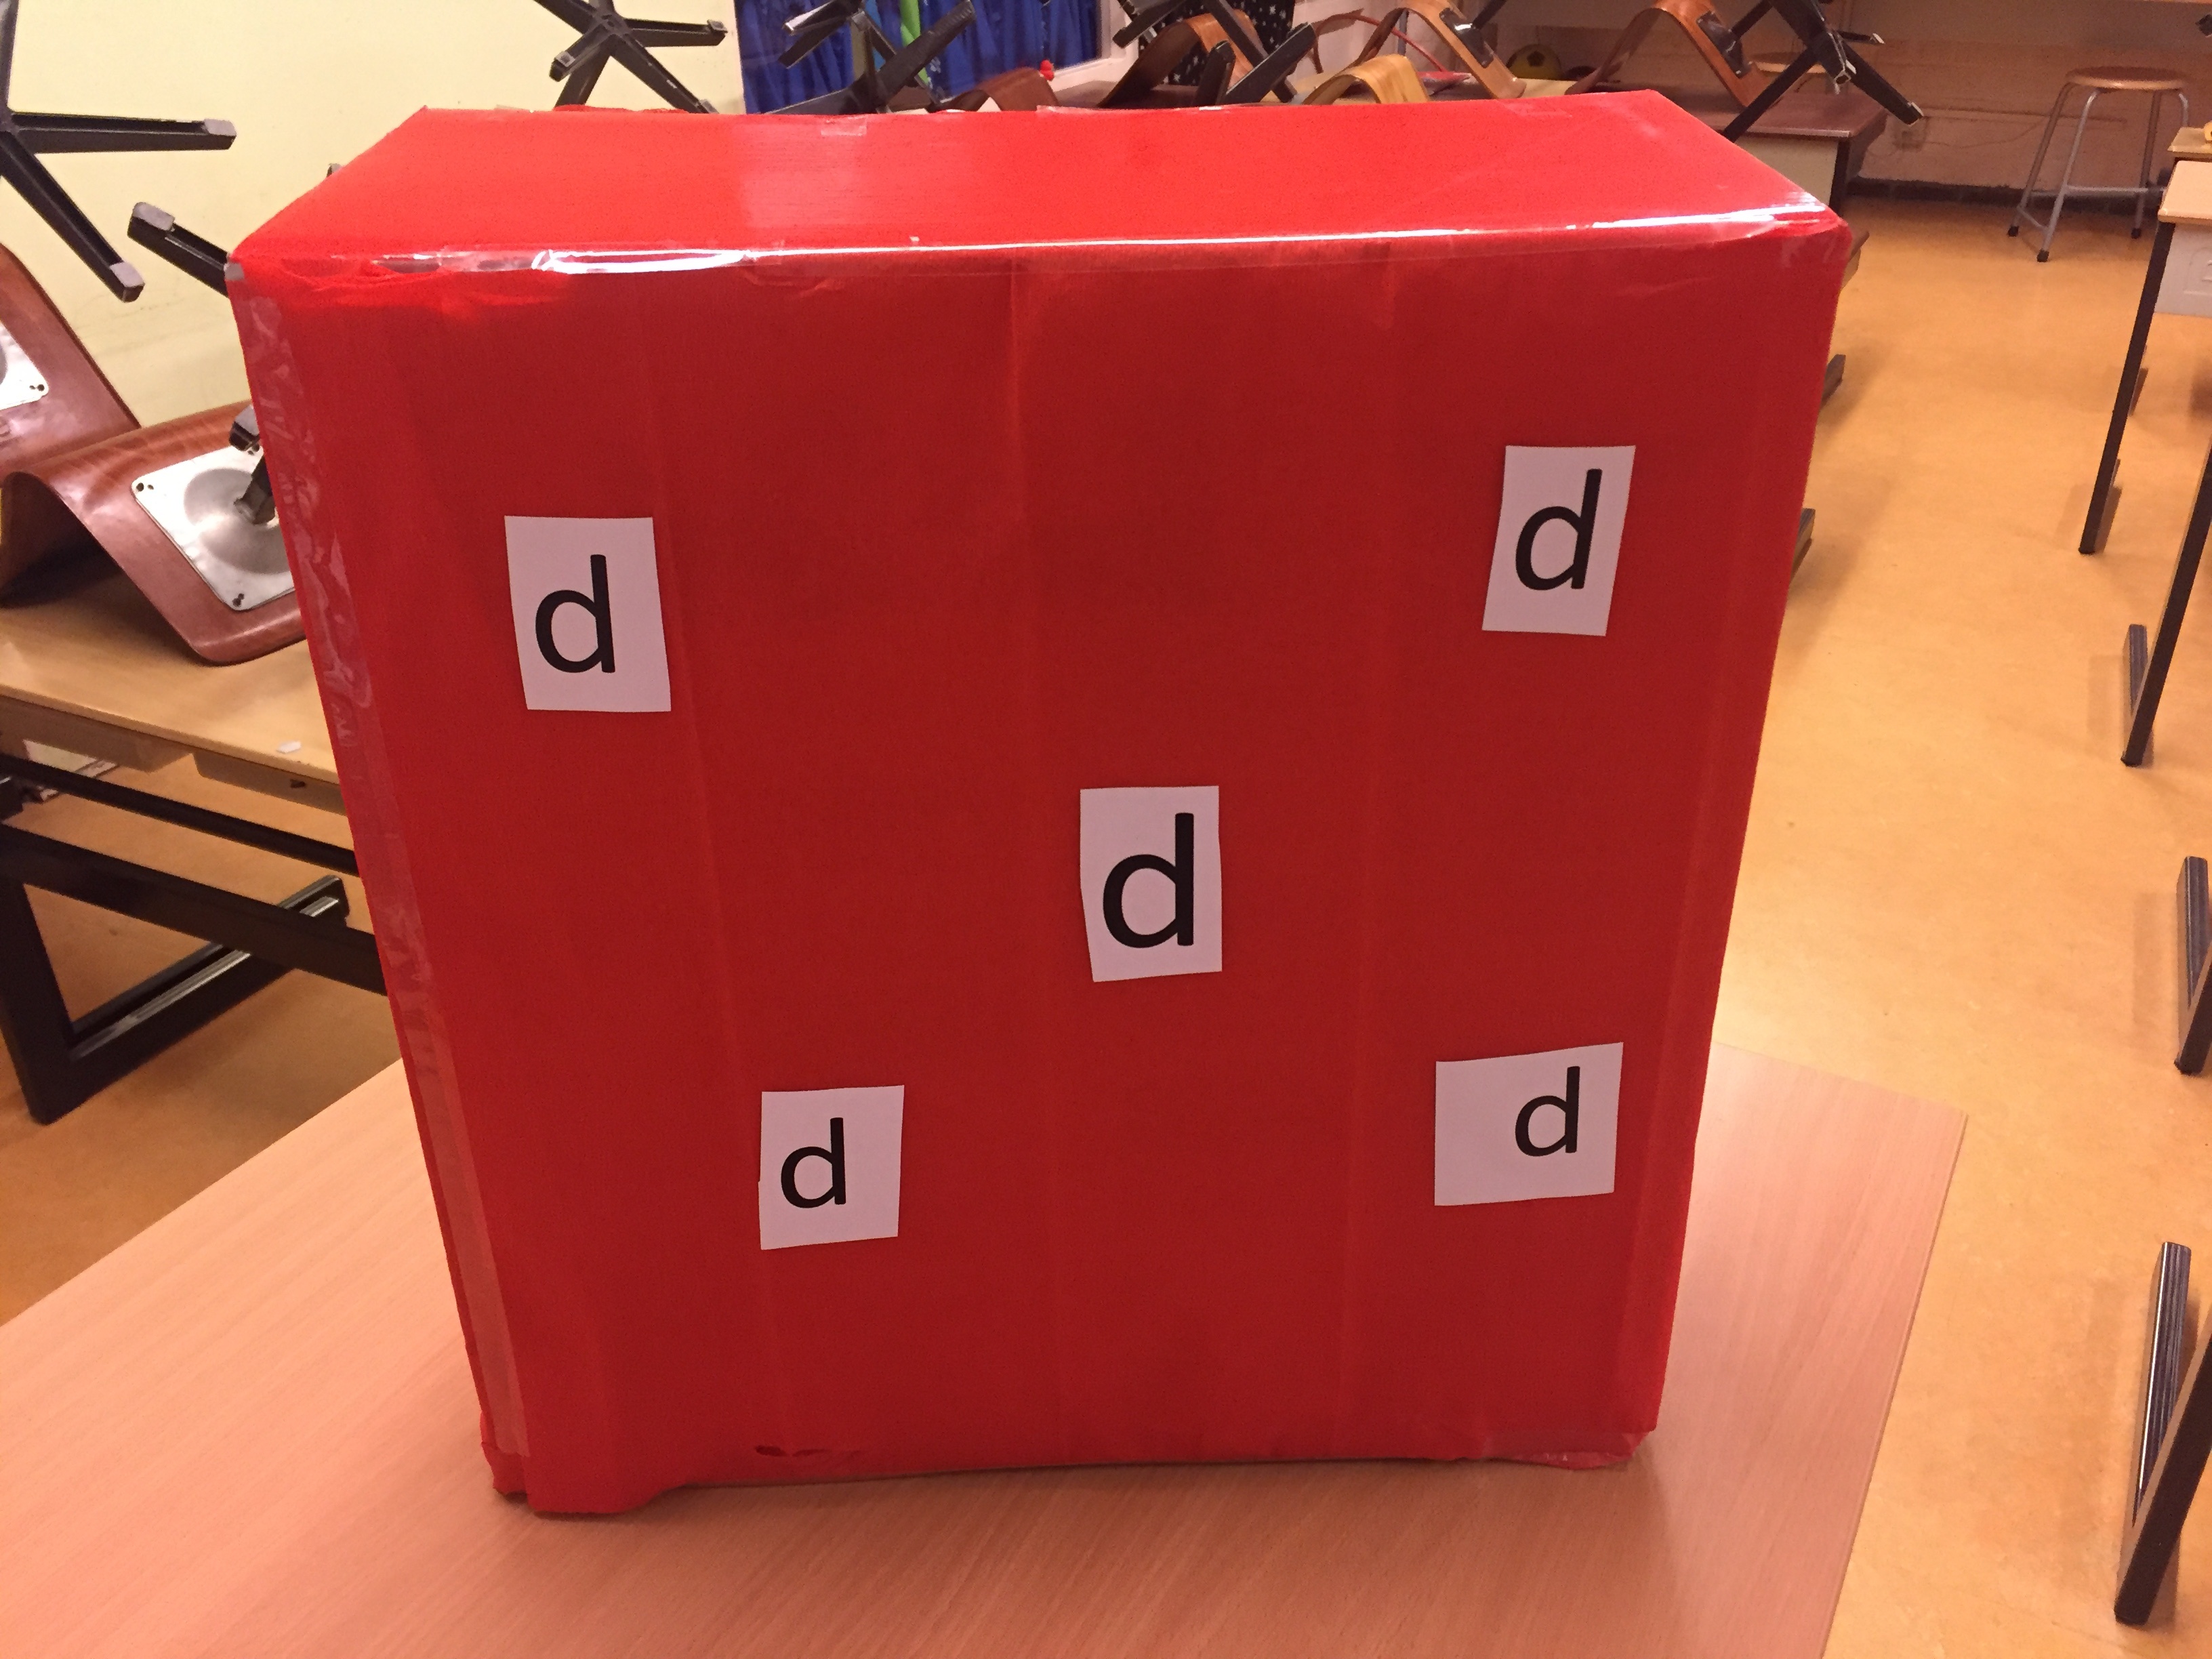 Je bekijkt nu D-dag: oefenen met de letter d